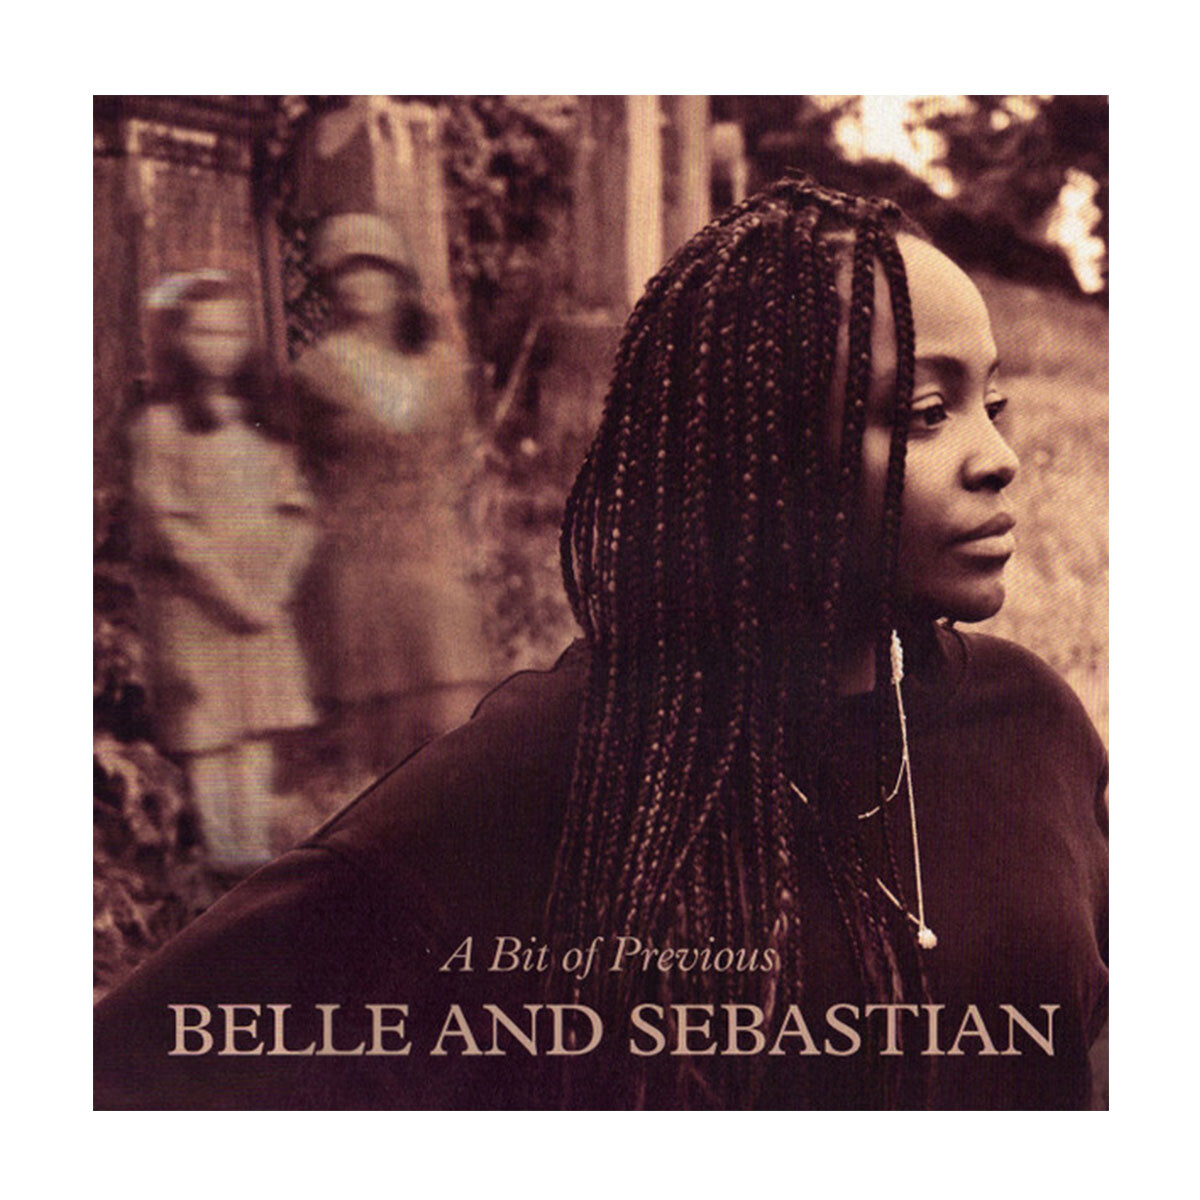 Belle And Sebastian / Bit Of Previous - Vinilo 